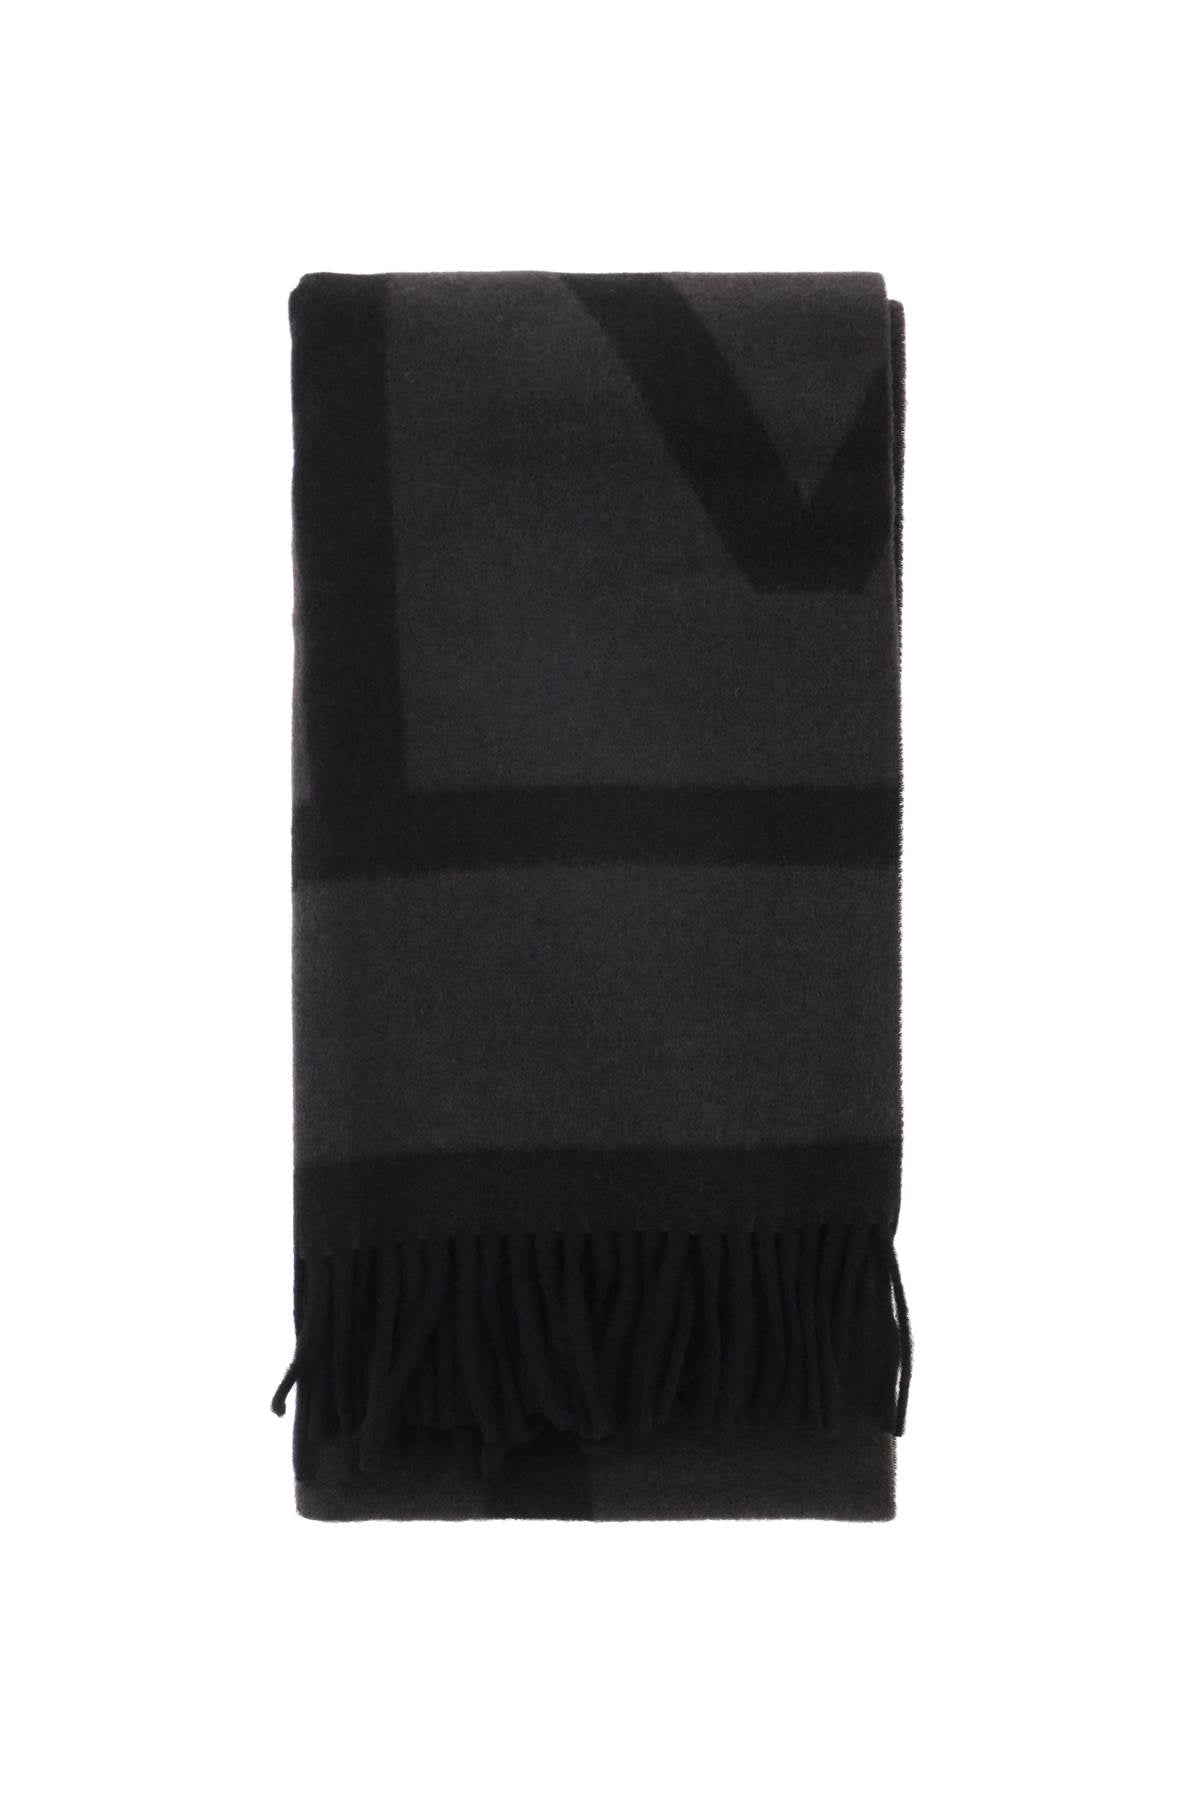 Toteme Toteme wool jacquard monogram scarf